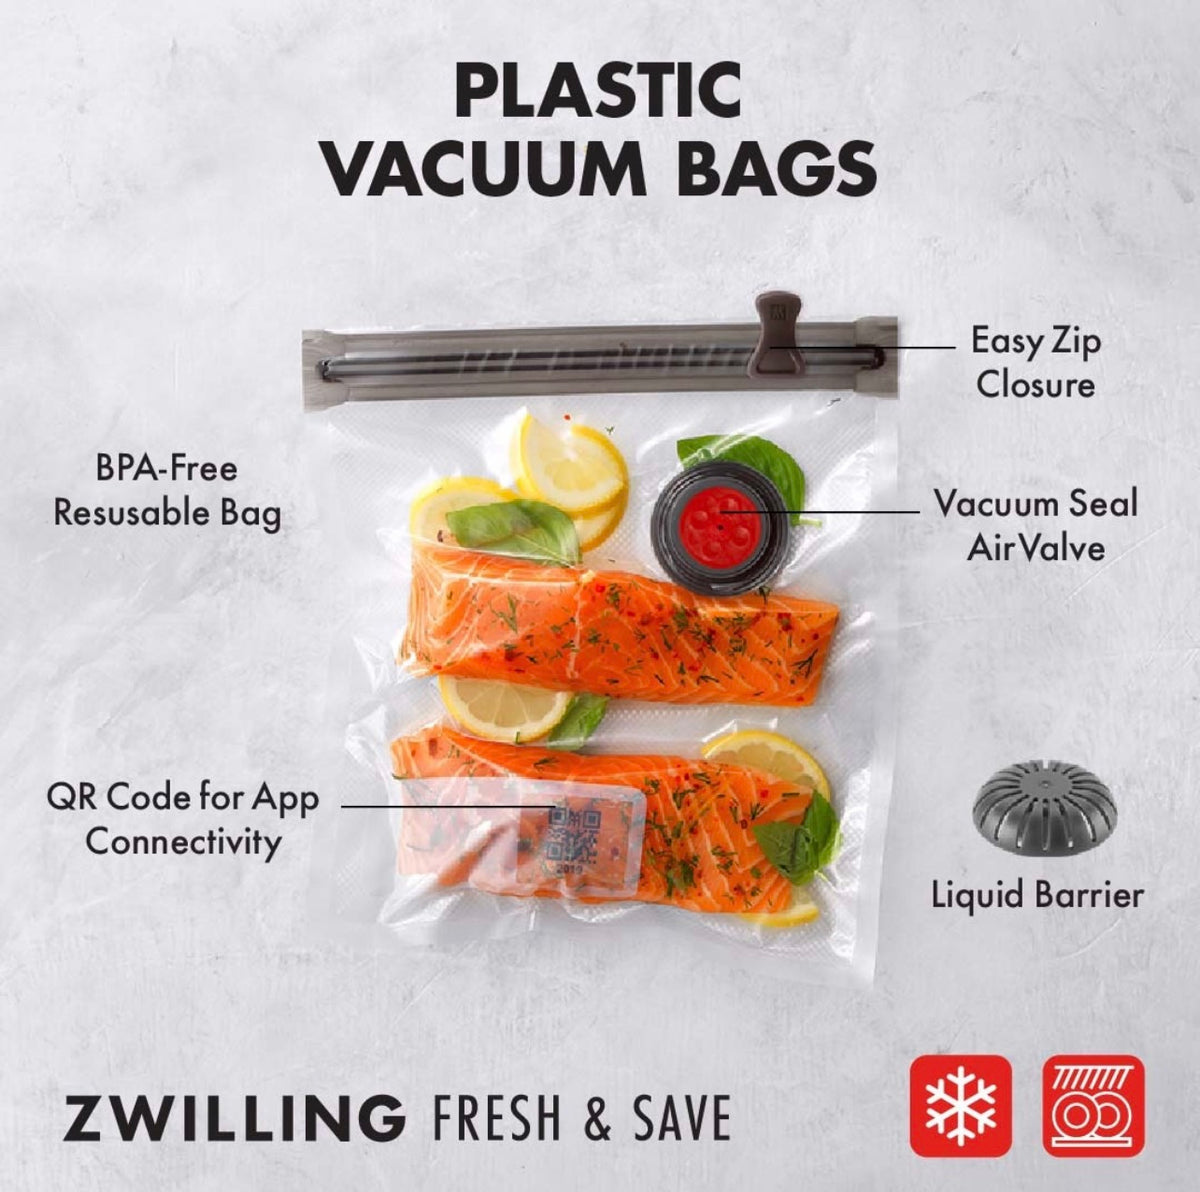 Sous Vide Vacuum Bags, Food Vacuum Bag, Storage Bags